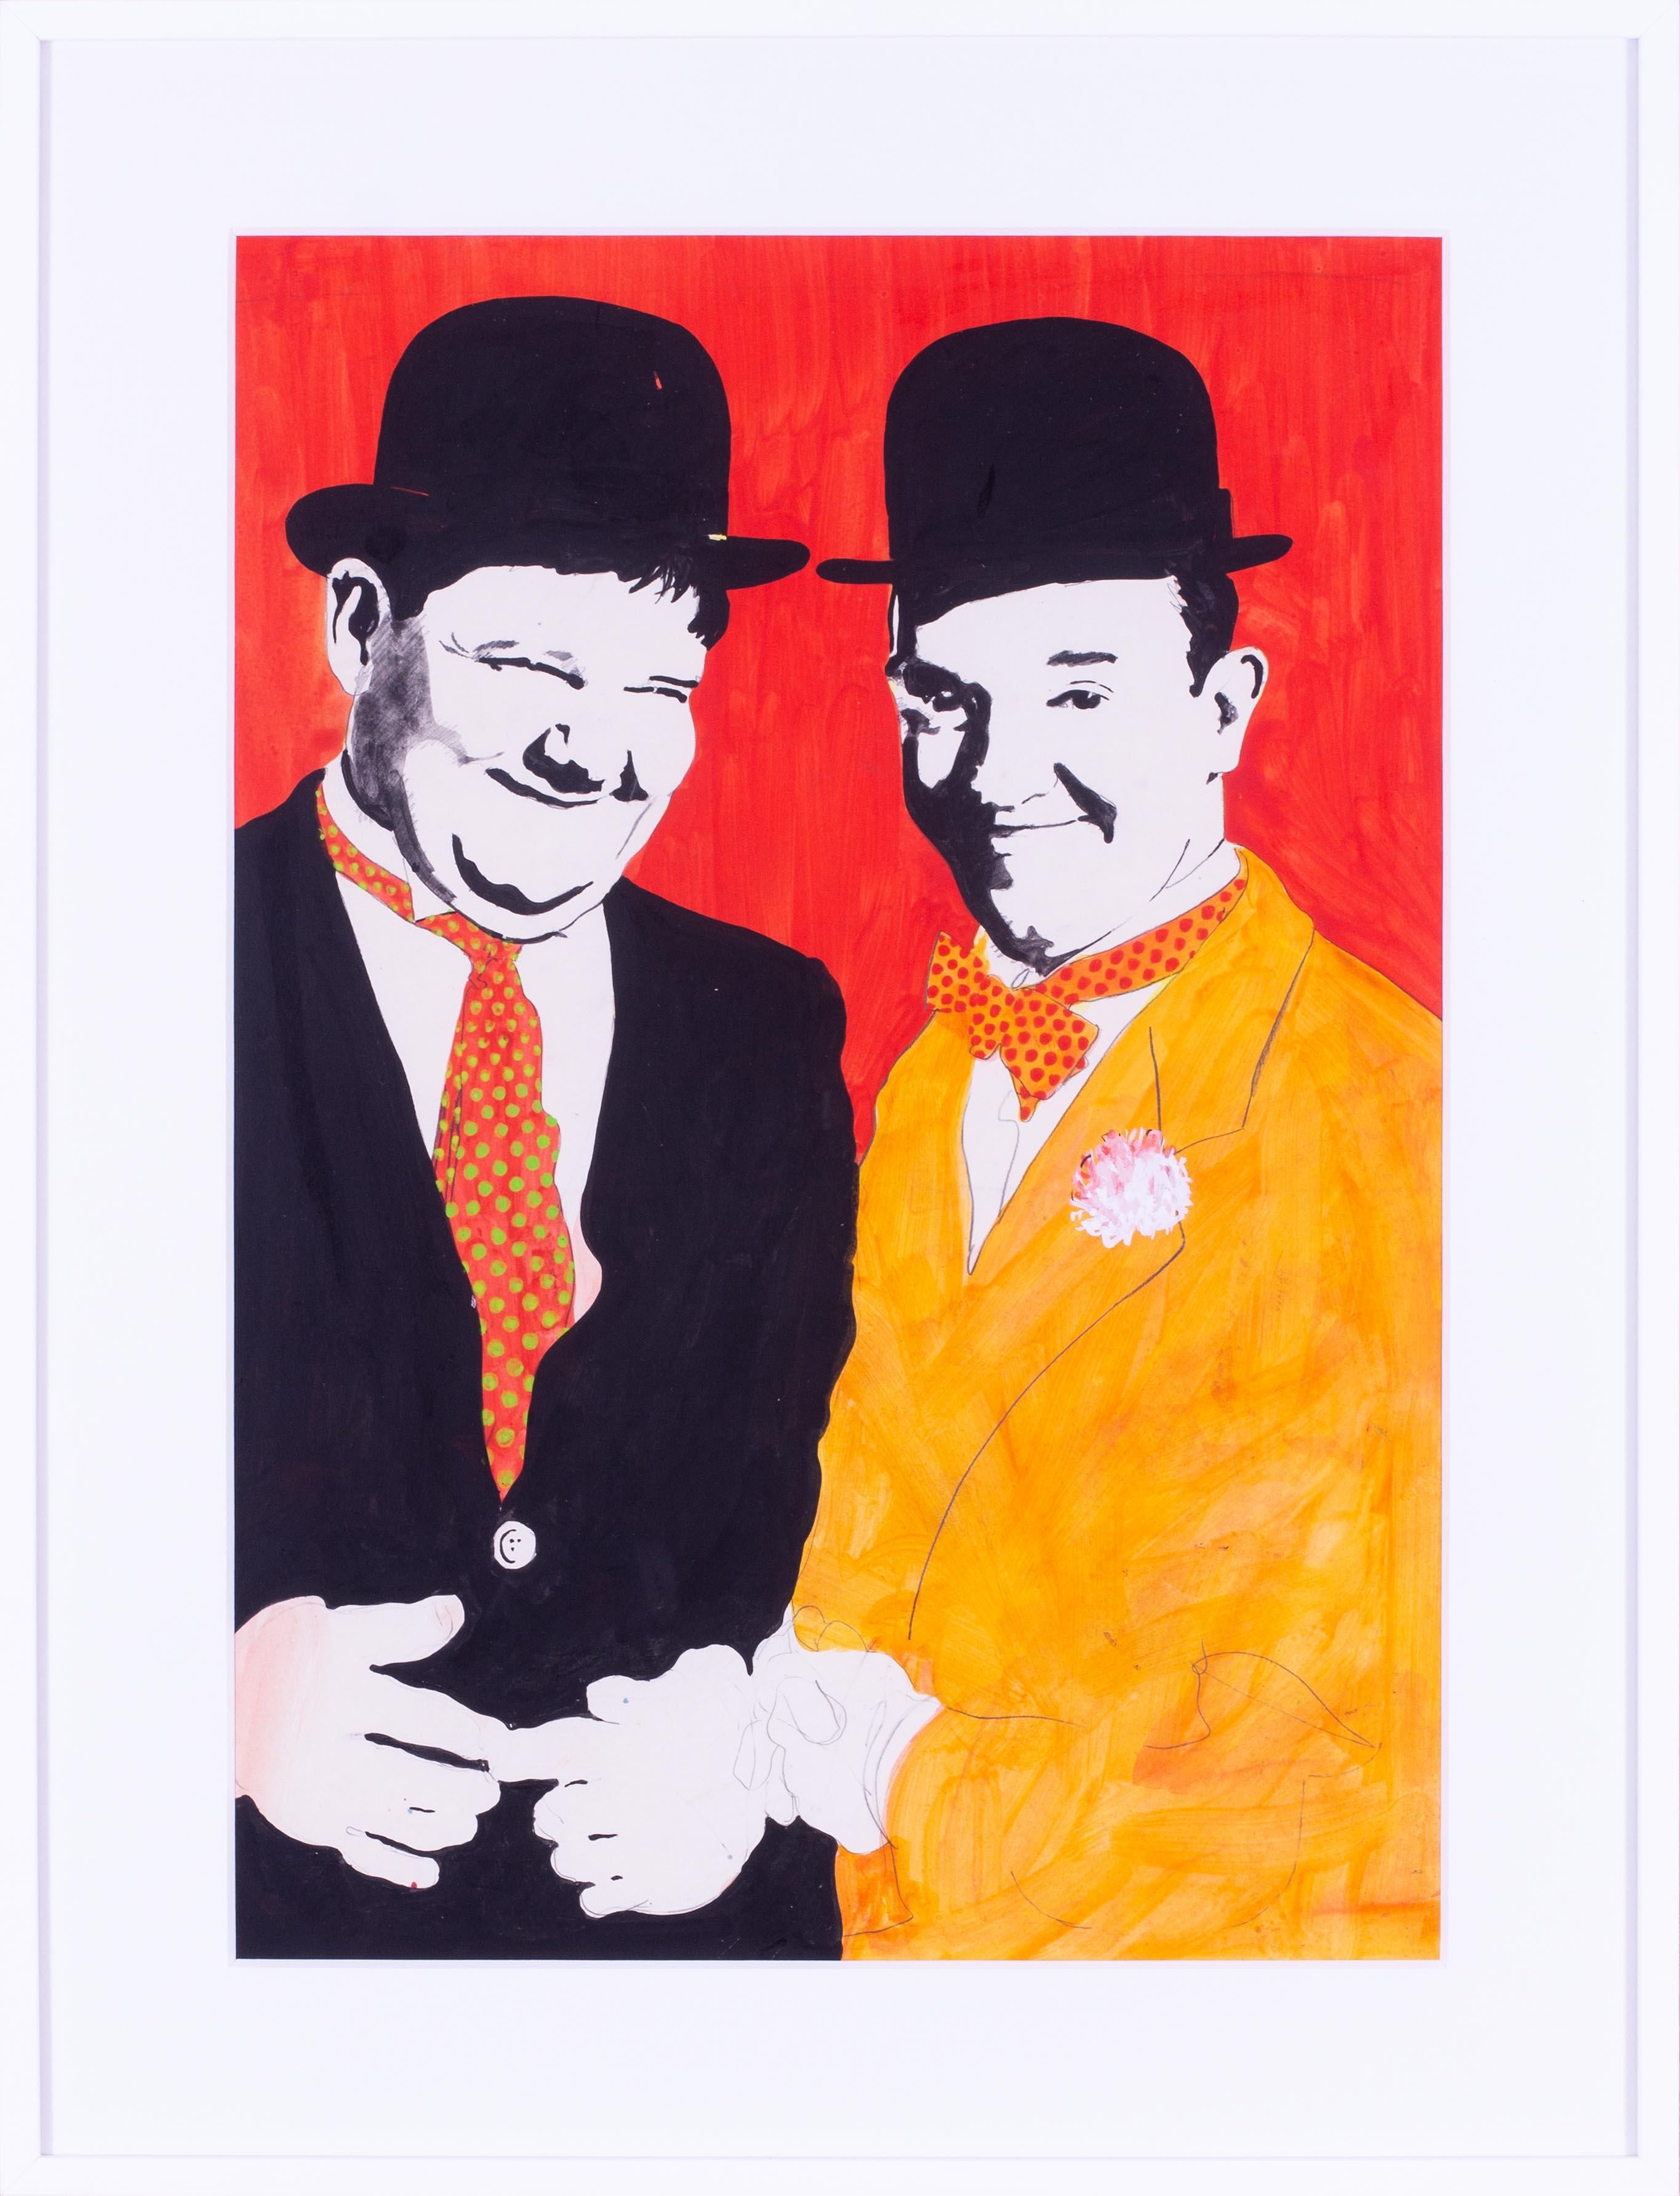 Jeffrey Morgan (britannique, né en 1942)
Laurel et Hardy
Peinture et crayon pour affiches
22.3/4 x 15.3/4 in. (57.8 x 40 cm.)
Un dessin pop art original pour une impression sur étain pour JRM designs Ltd.

Jeffrey Morgan est un peintre, enseignant